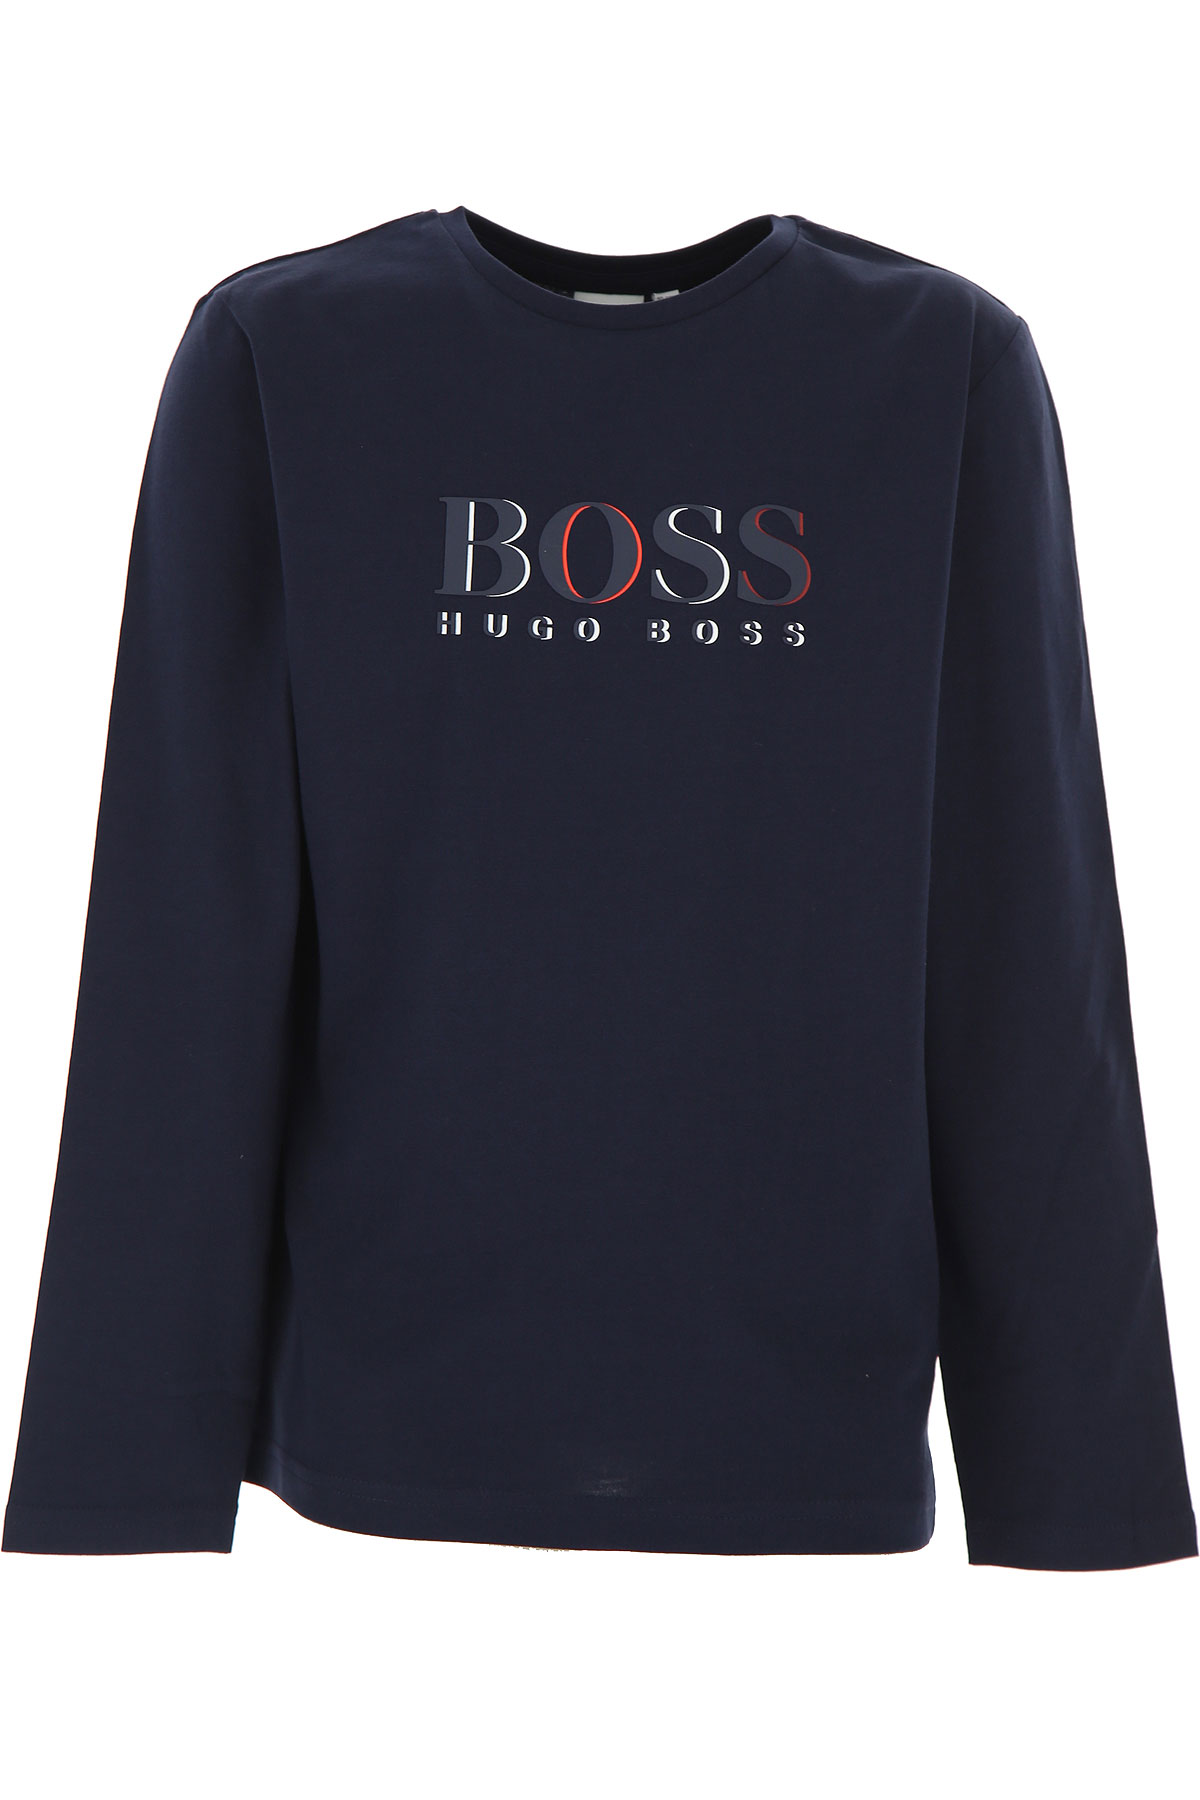 Hugo Boss Kinder T-Shirt für Jungen Günstig im Sale, Blau, Baumwolle, 2017, 10Y 4Y 5Y 6Y 8Y